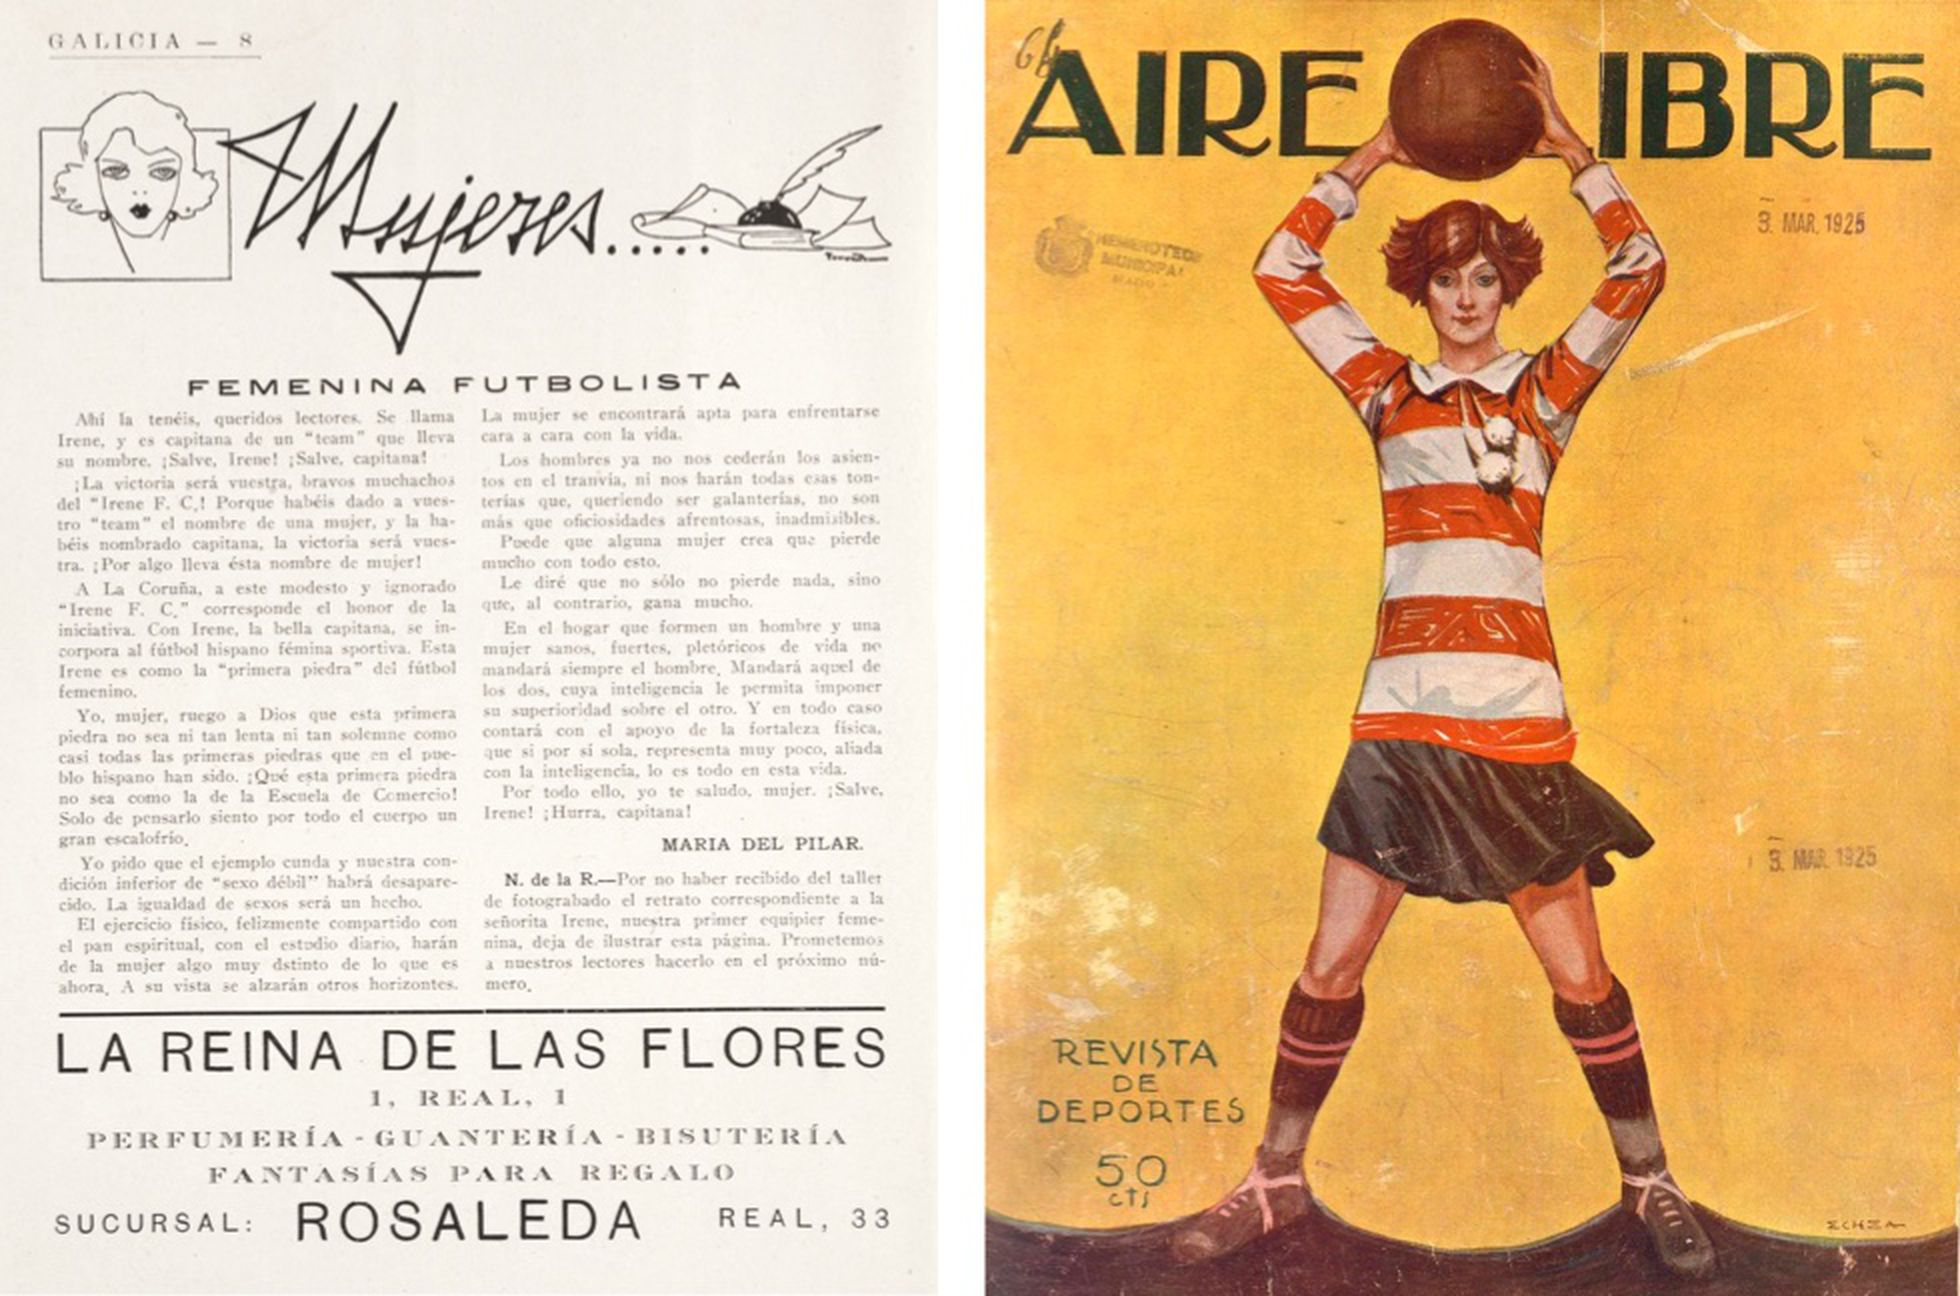 A la izquierda, artículo titulado “Femenina Futbolista” publicado en 'Galicia: revista gráfica y popular' el 2 de febrero de 1925).  A la derecha, portada de la revista 'Aire Libre' del 3 de marzo de 1925.